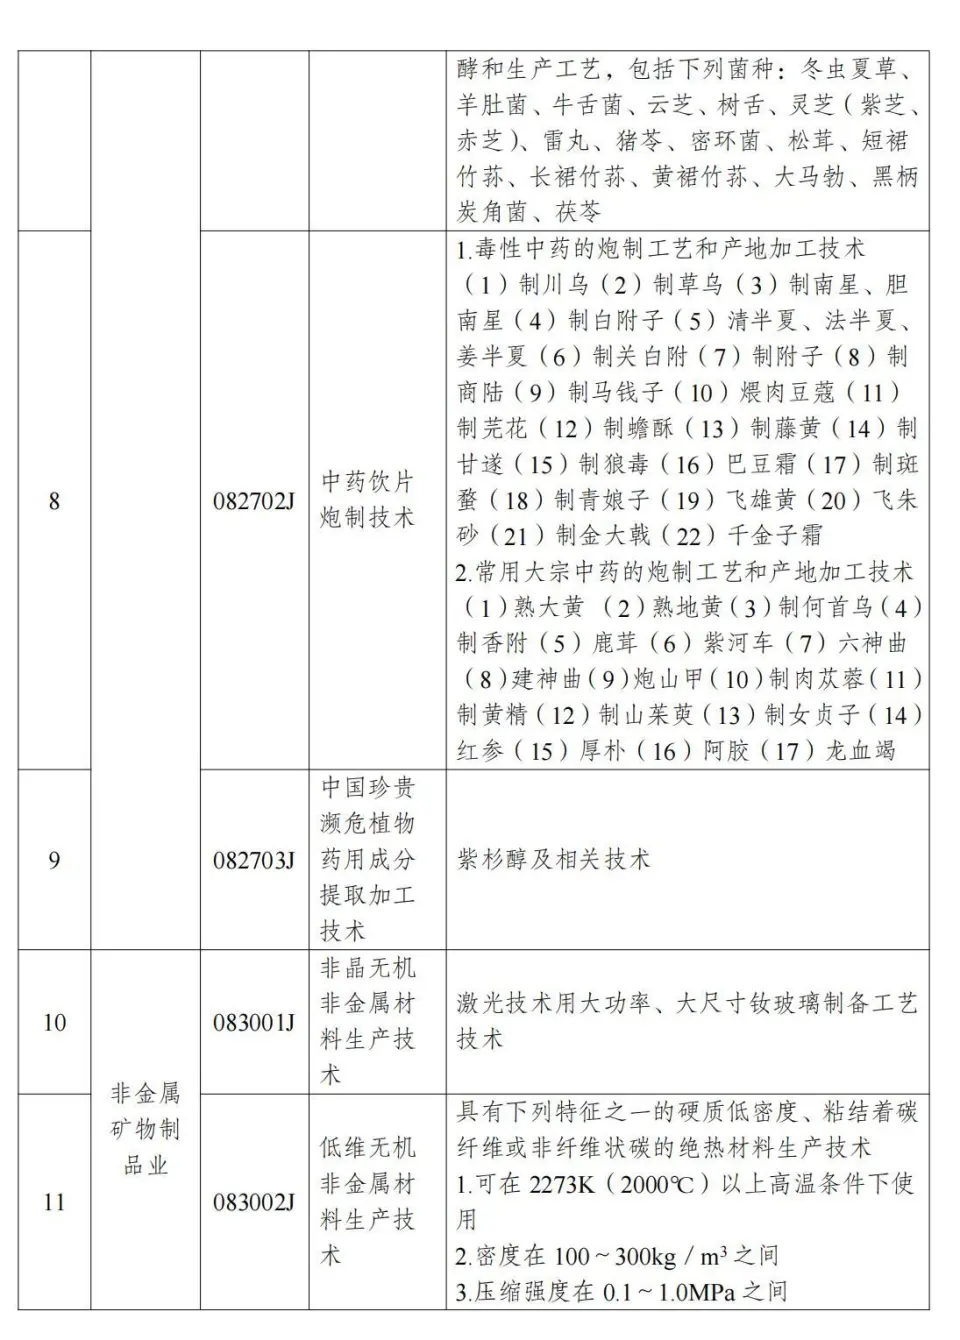 两部分公布《中国制止出口限制出口技术目录》 第2张图片